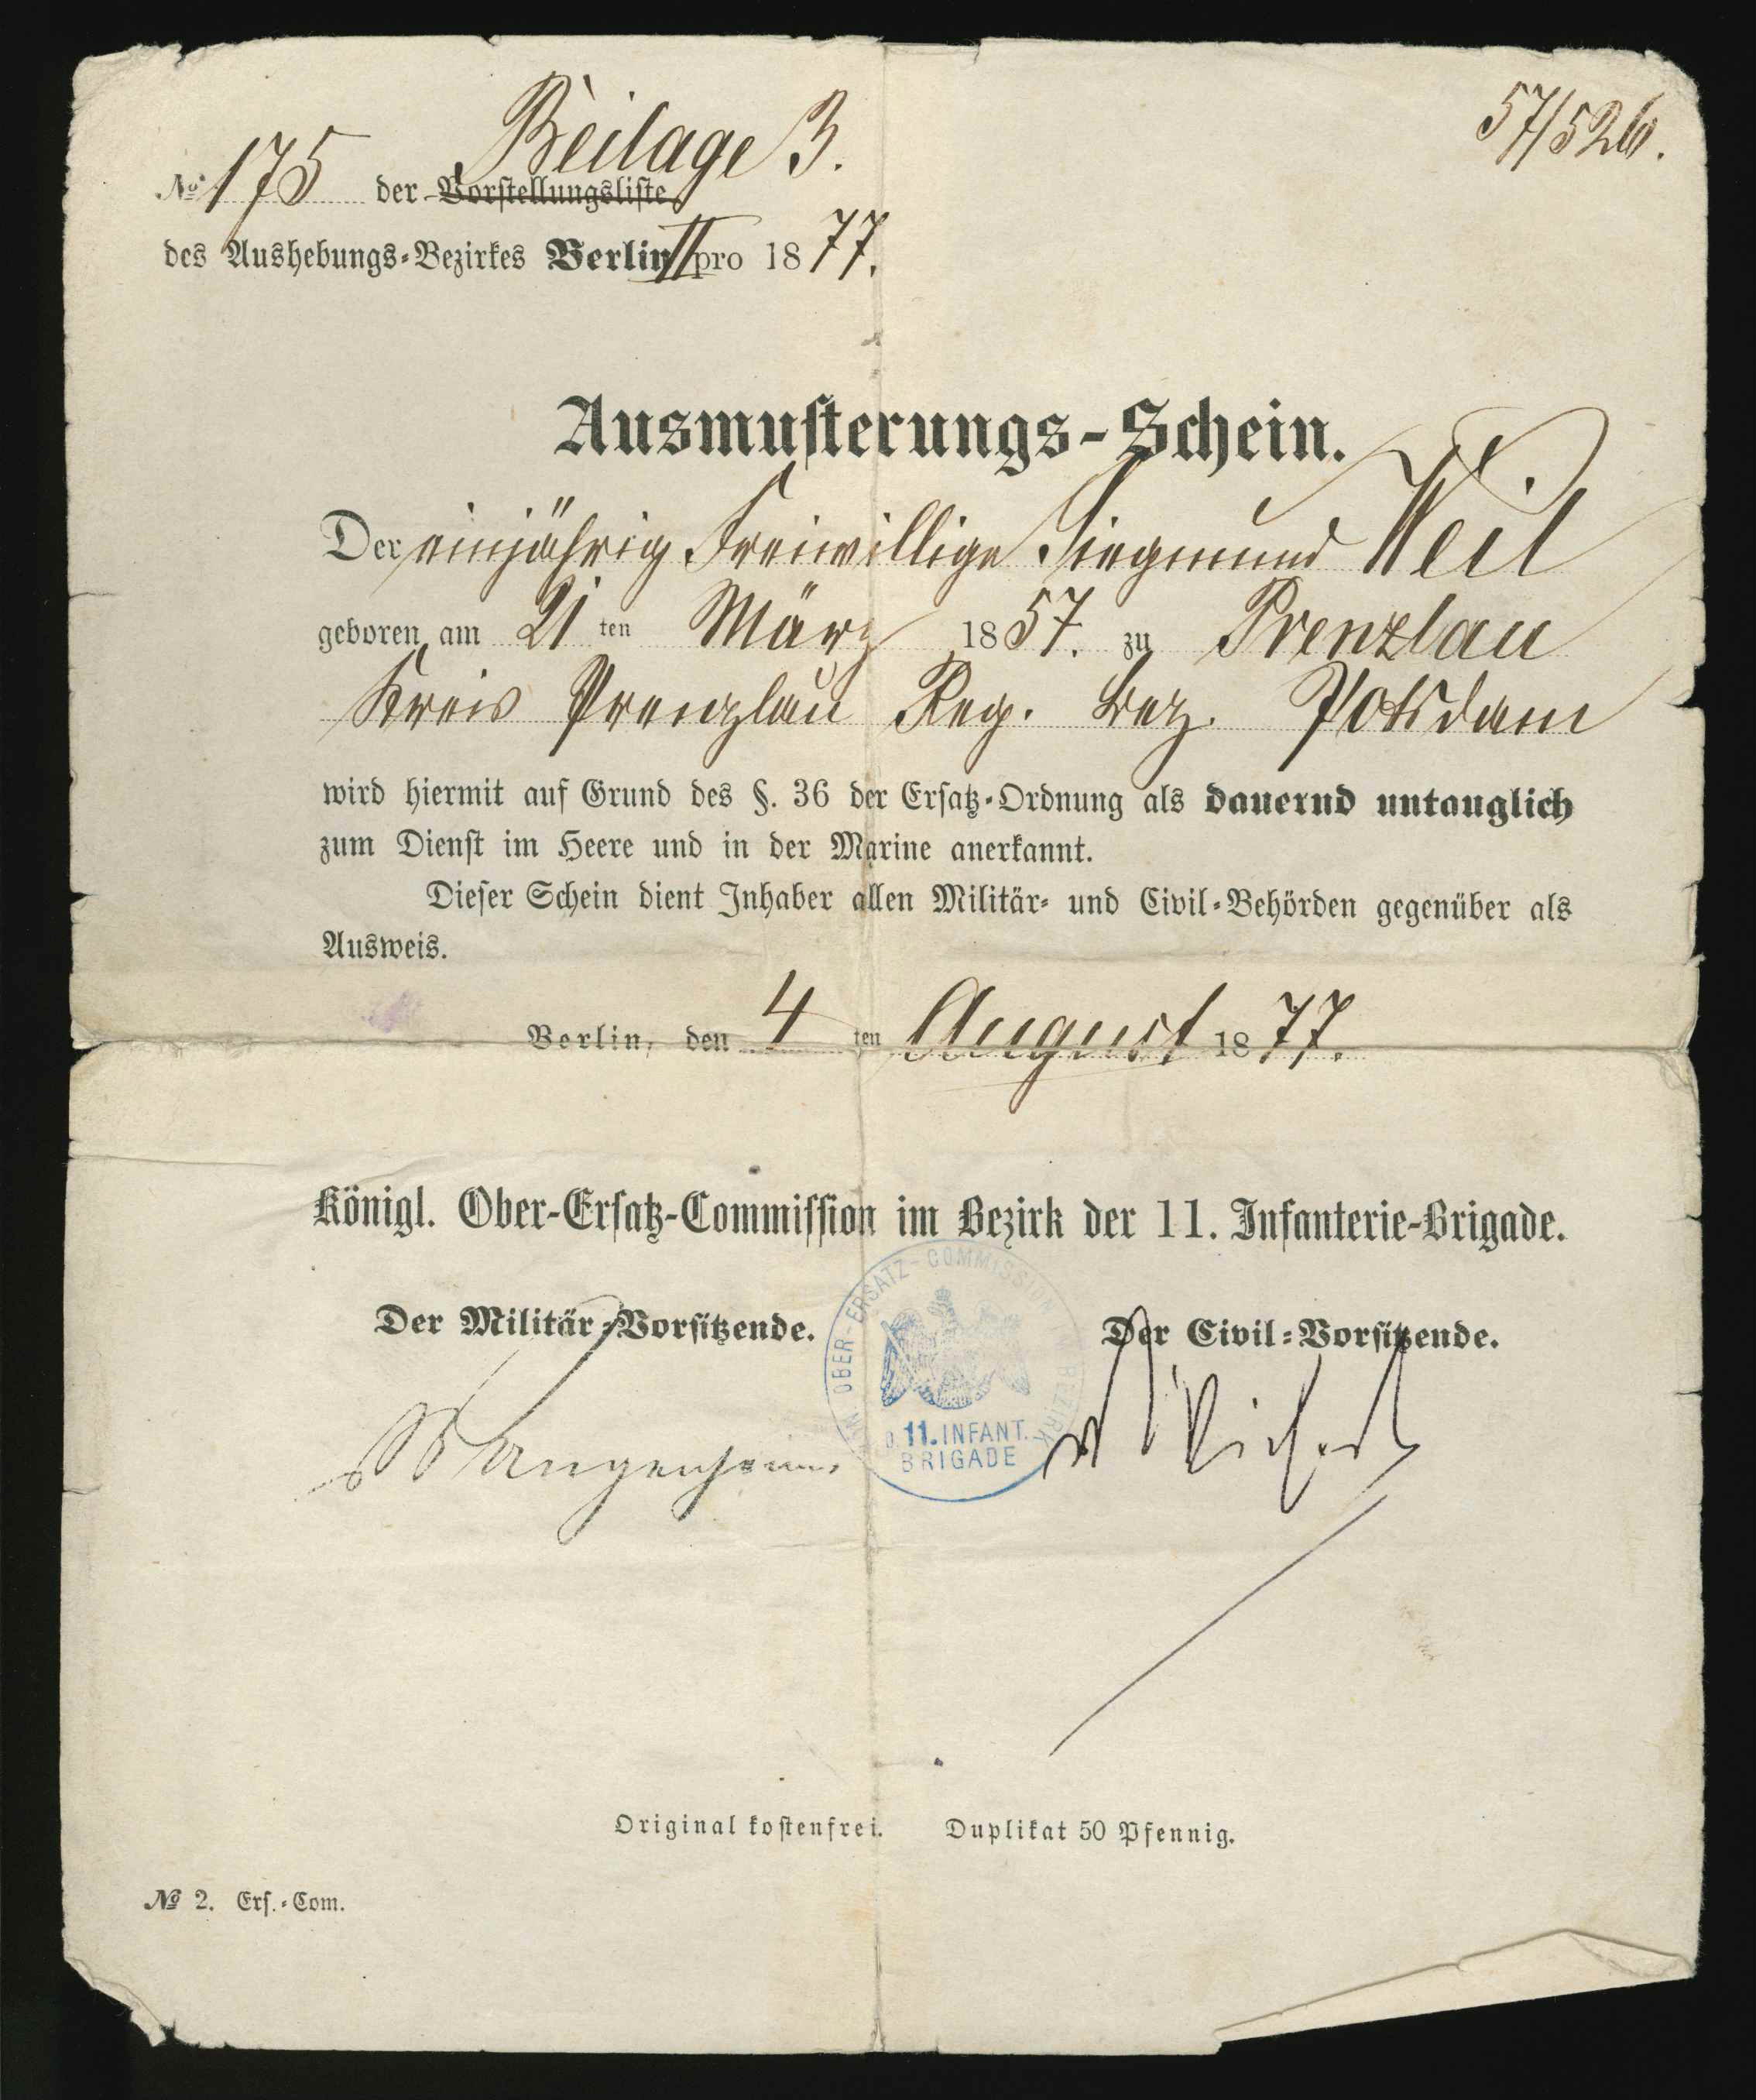 Ausmusterungsschein für Siegmund Weil 1886 (KTL CC BY-NC-SA)